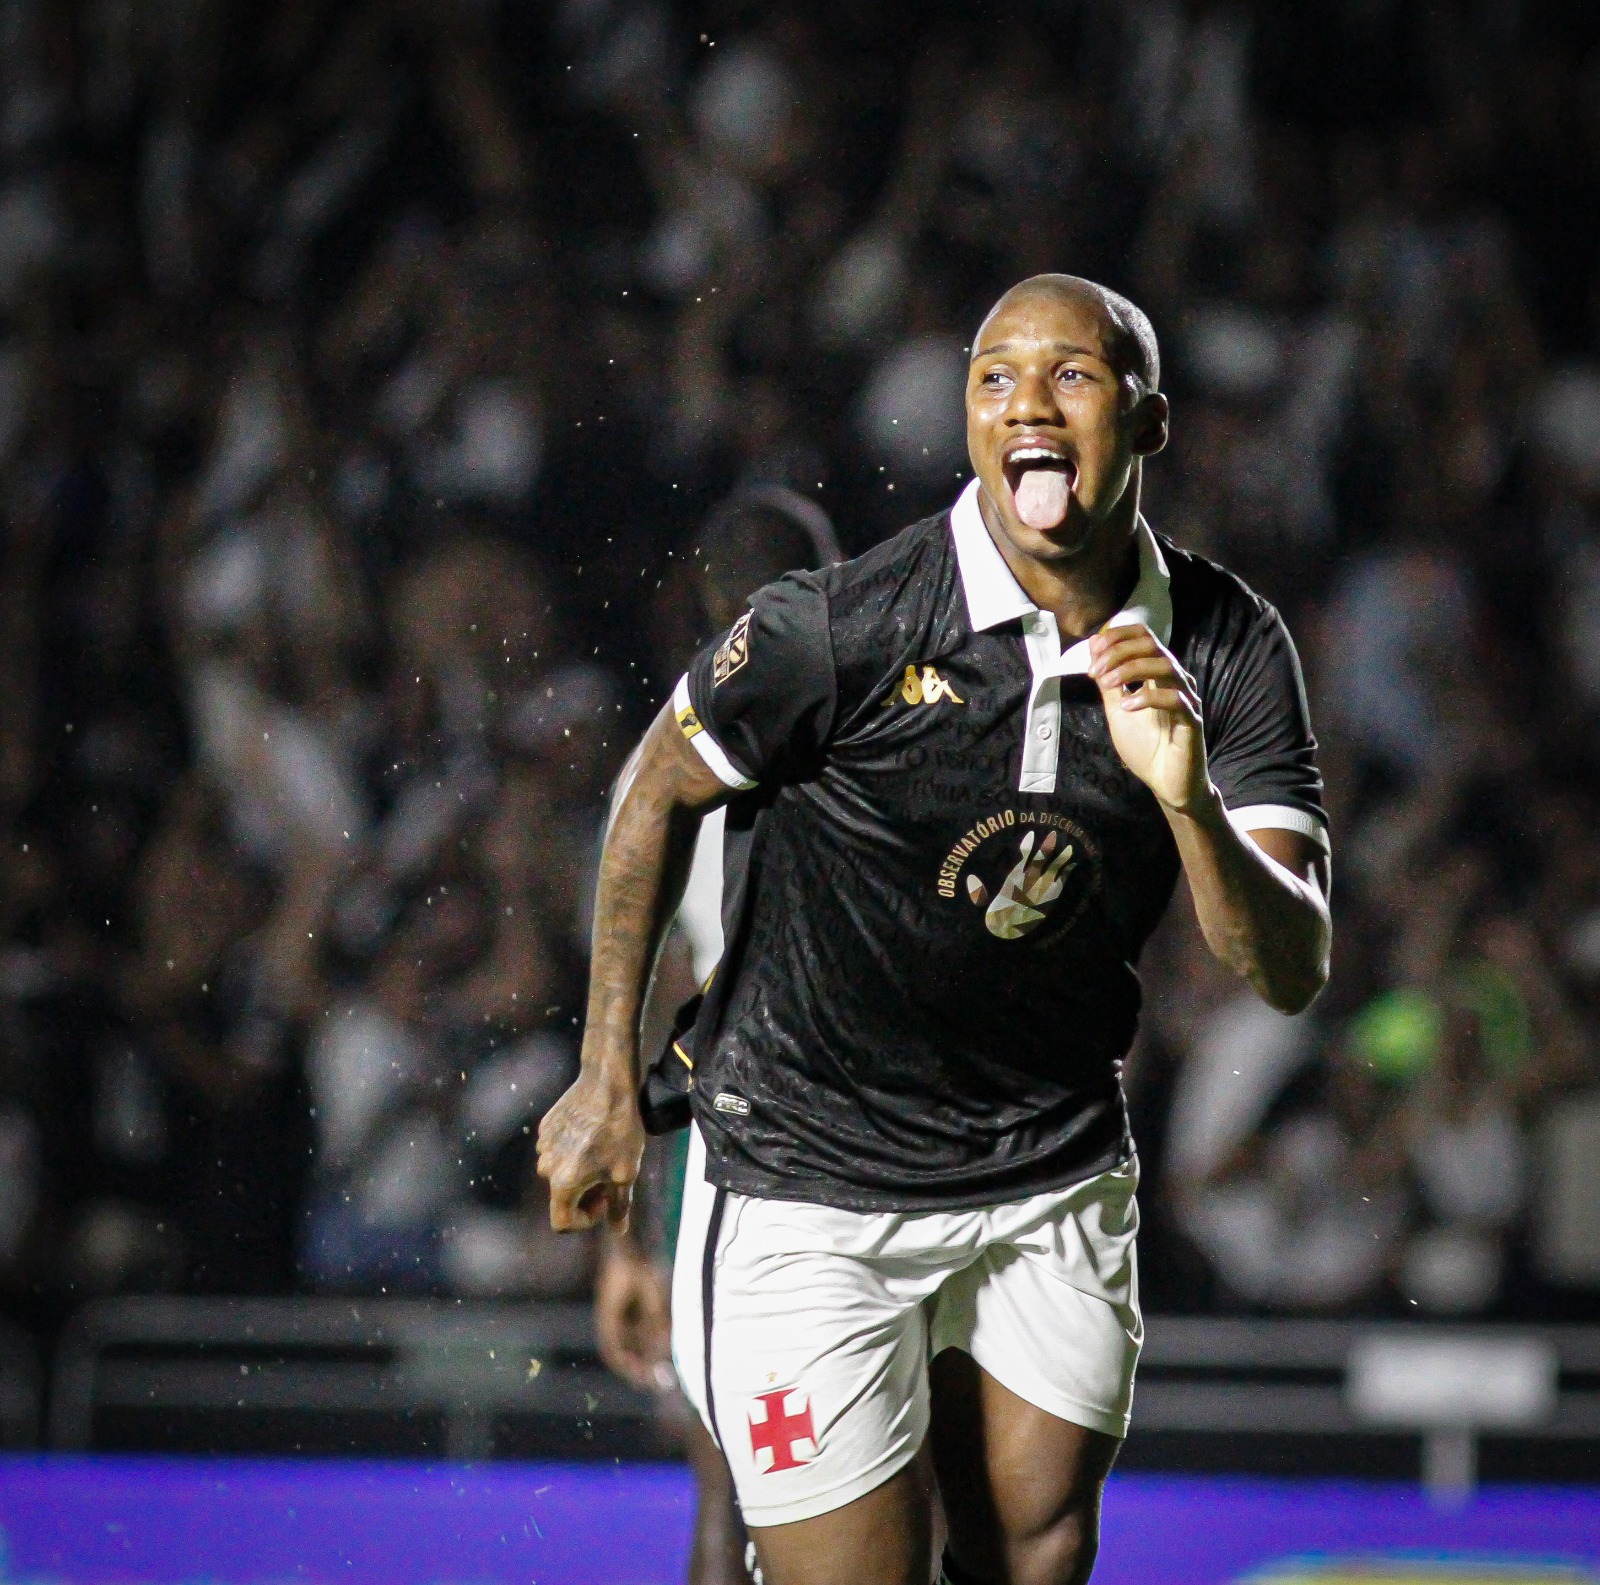 Leandrinho comemora gol (Foto: Matheus Lima / Vasco da Gama